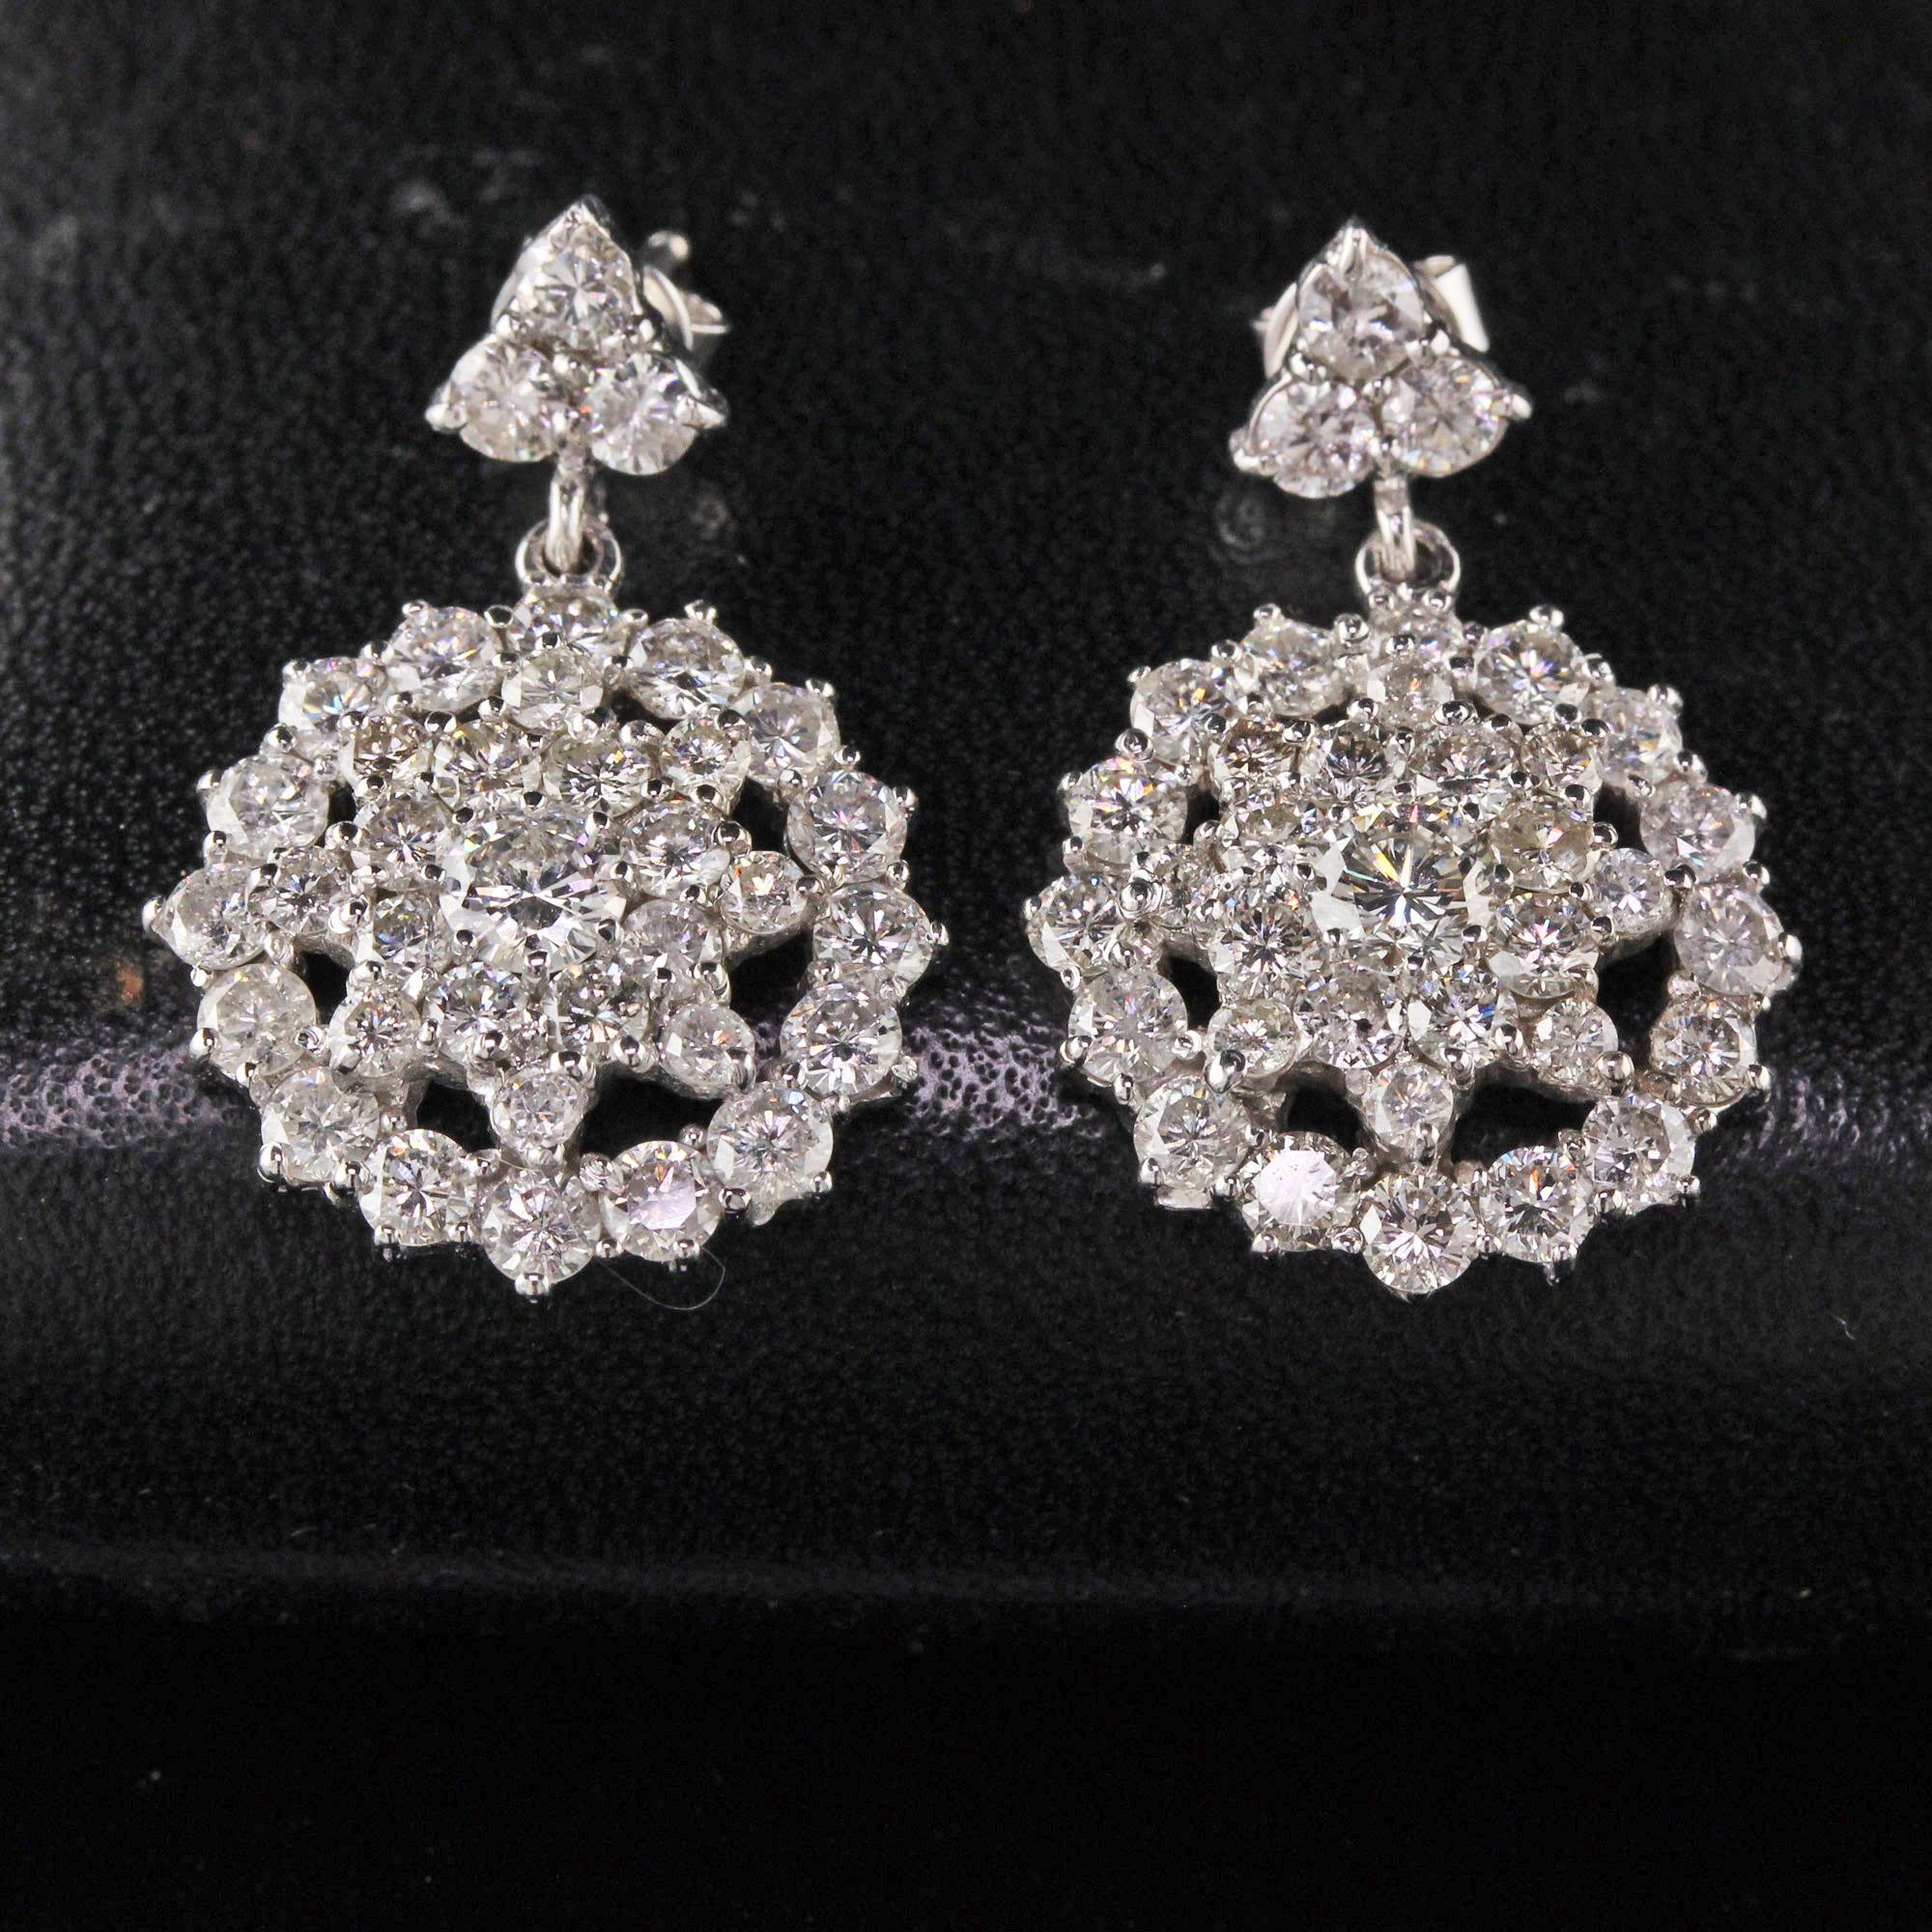 Magnifiques boucles d'oreilles en forme de goutte avec des diamants sertis en grappe.

Métal : Or blanc 14K

Poids : 6,4 grammes

Poids du diamant : Environ 5,25 ct

Couleur du diamant : G-H

Clarté du diamant : VS2

Mesures : 26.70 x 17.40 mm